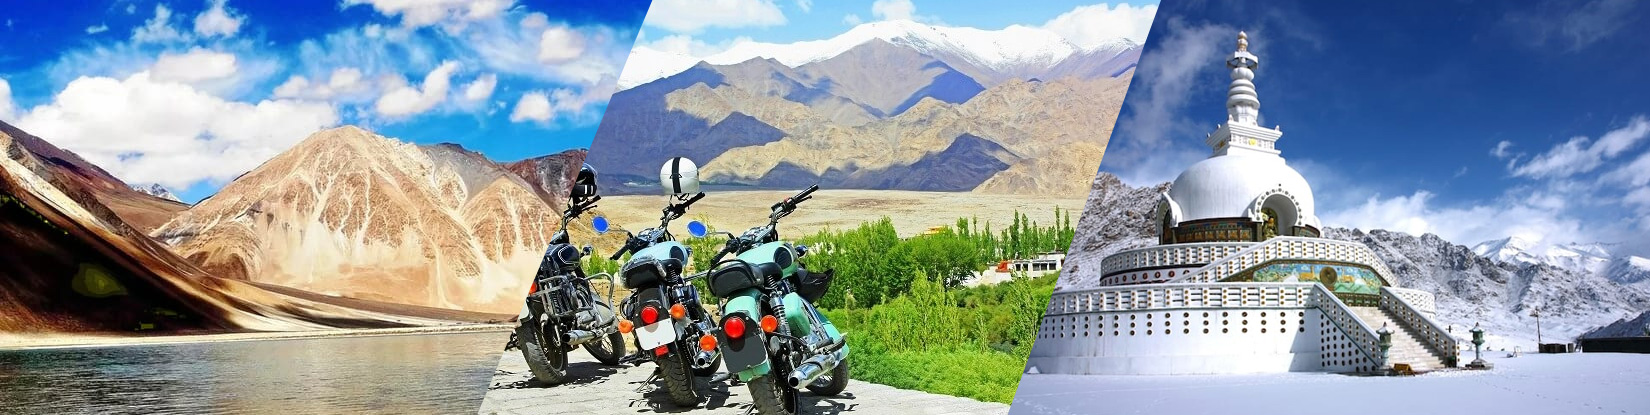 Fascinating Ladakh Tour